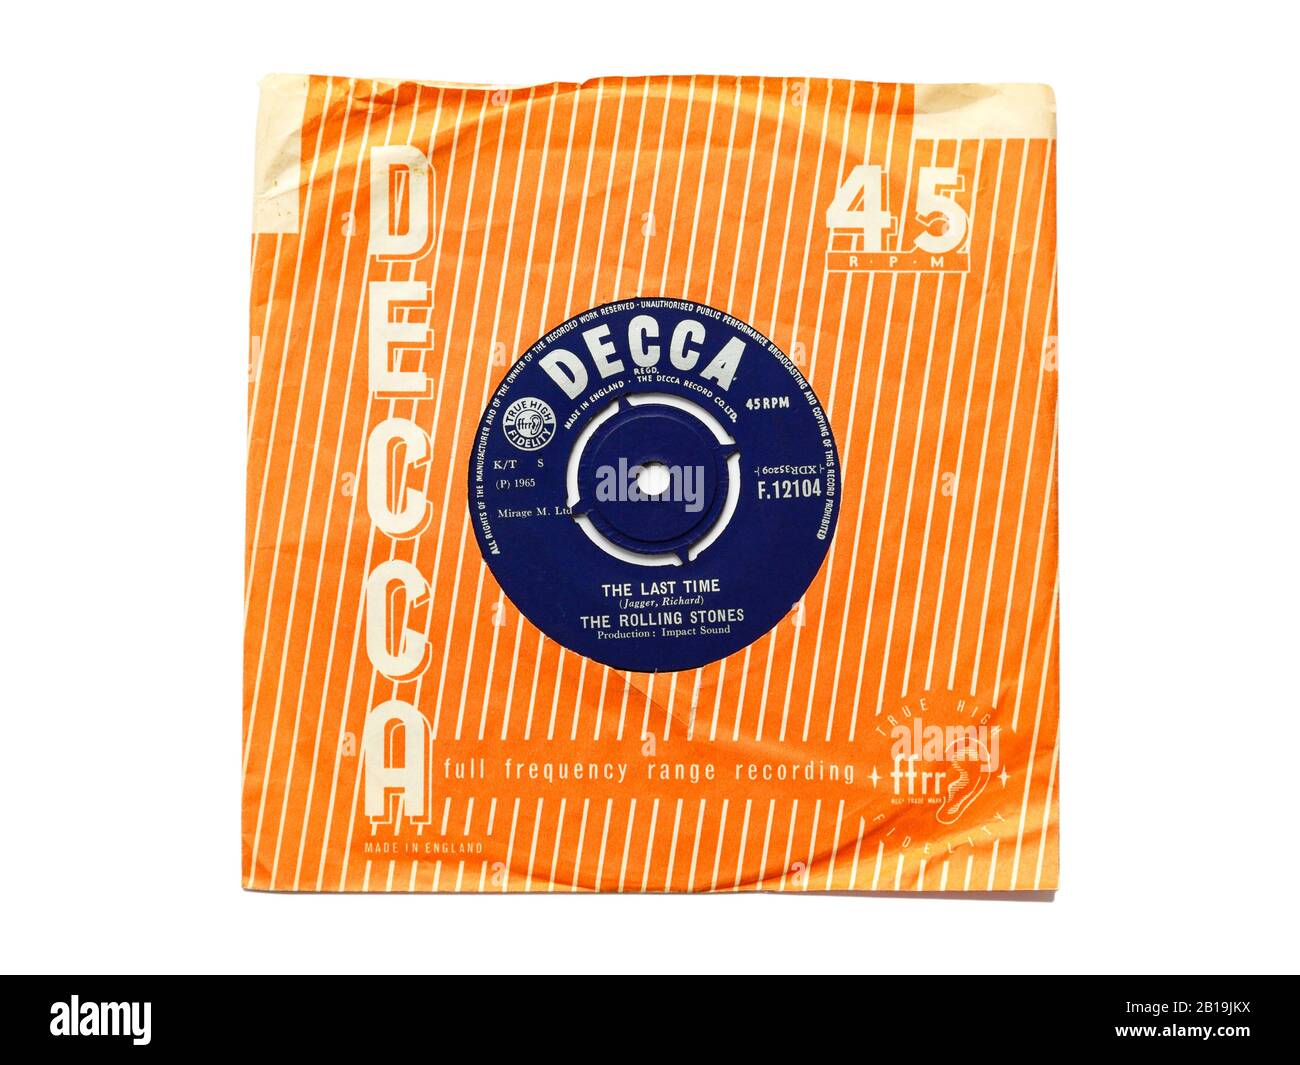 Ancienne étiquette Decca originale vinyle 45 tr/min enregistre La dernière Fois par les Rolling Stones 1965 dans la gaine de papier déchirée isolée sur blanc. Banque D'Images